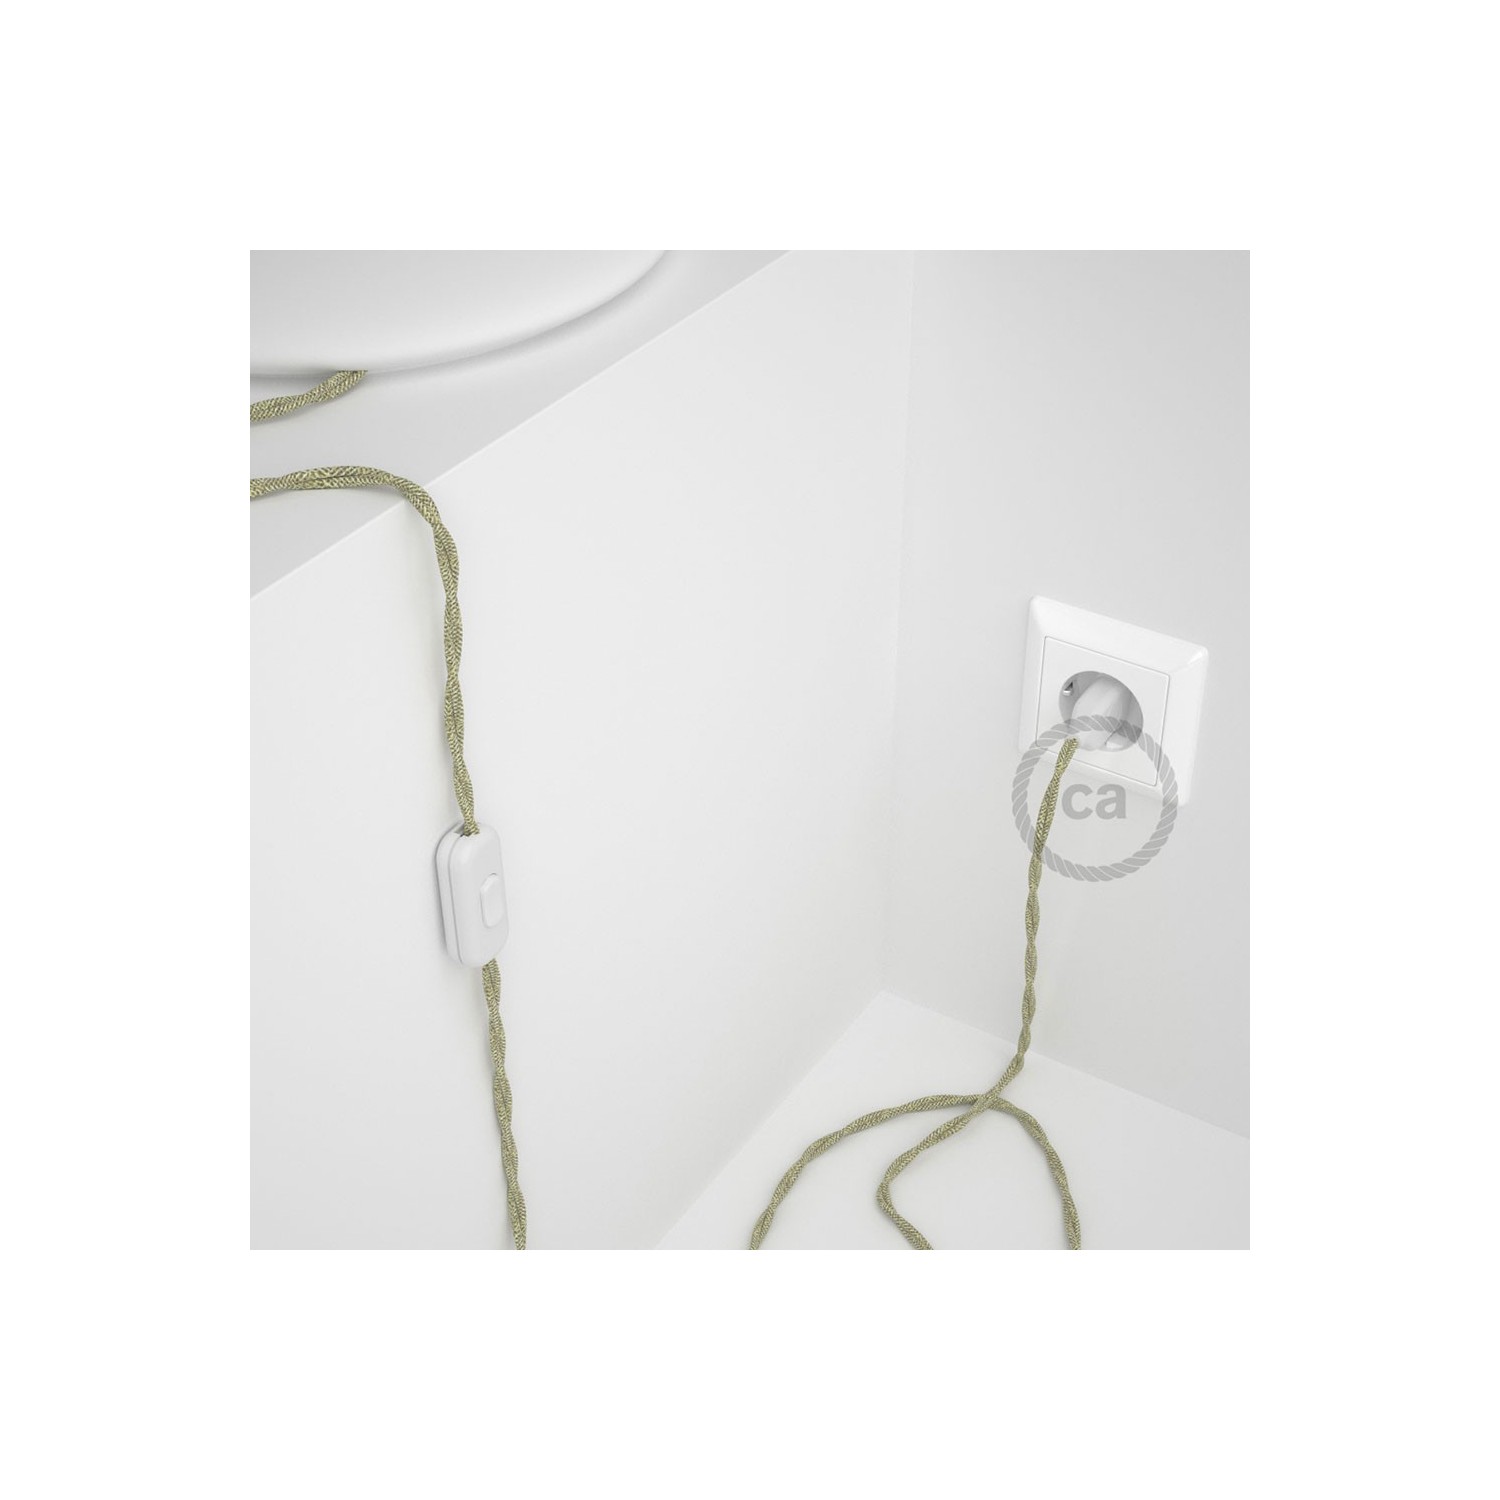 Cablaggio per lampada, cavo TN01 Lino Naturale Neutro 1,80 m. Scegli il colore dell'interruttore e della spina.